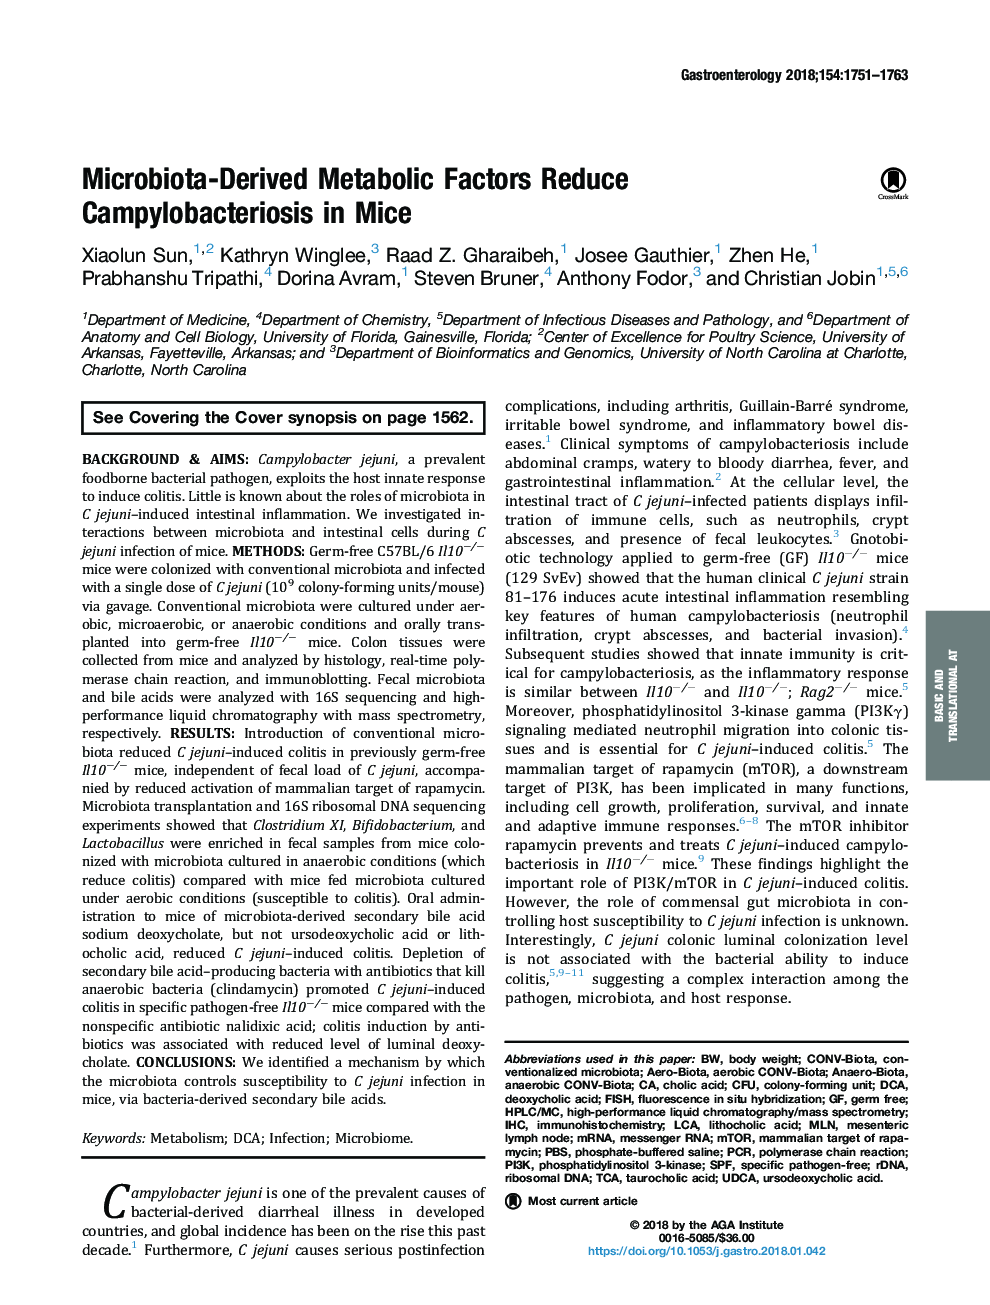 عوامل متابولیک میکروبیولوژیک کمپیلوباکتریوز را در موش ها کاهش می دهند 